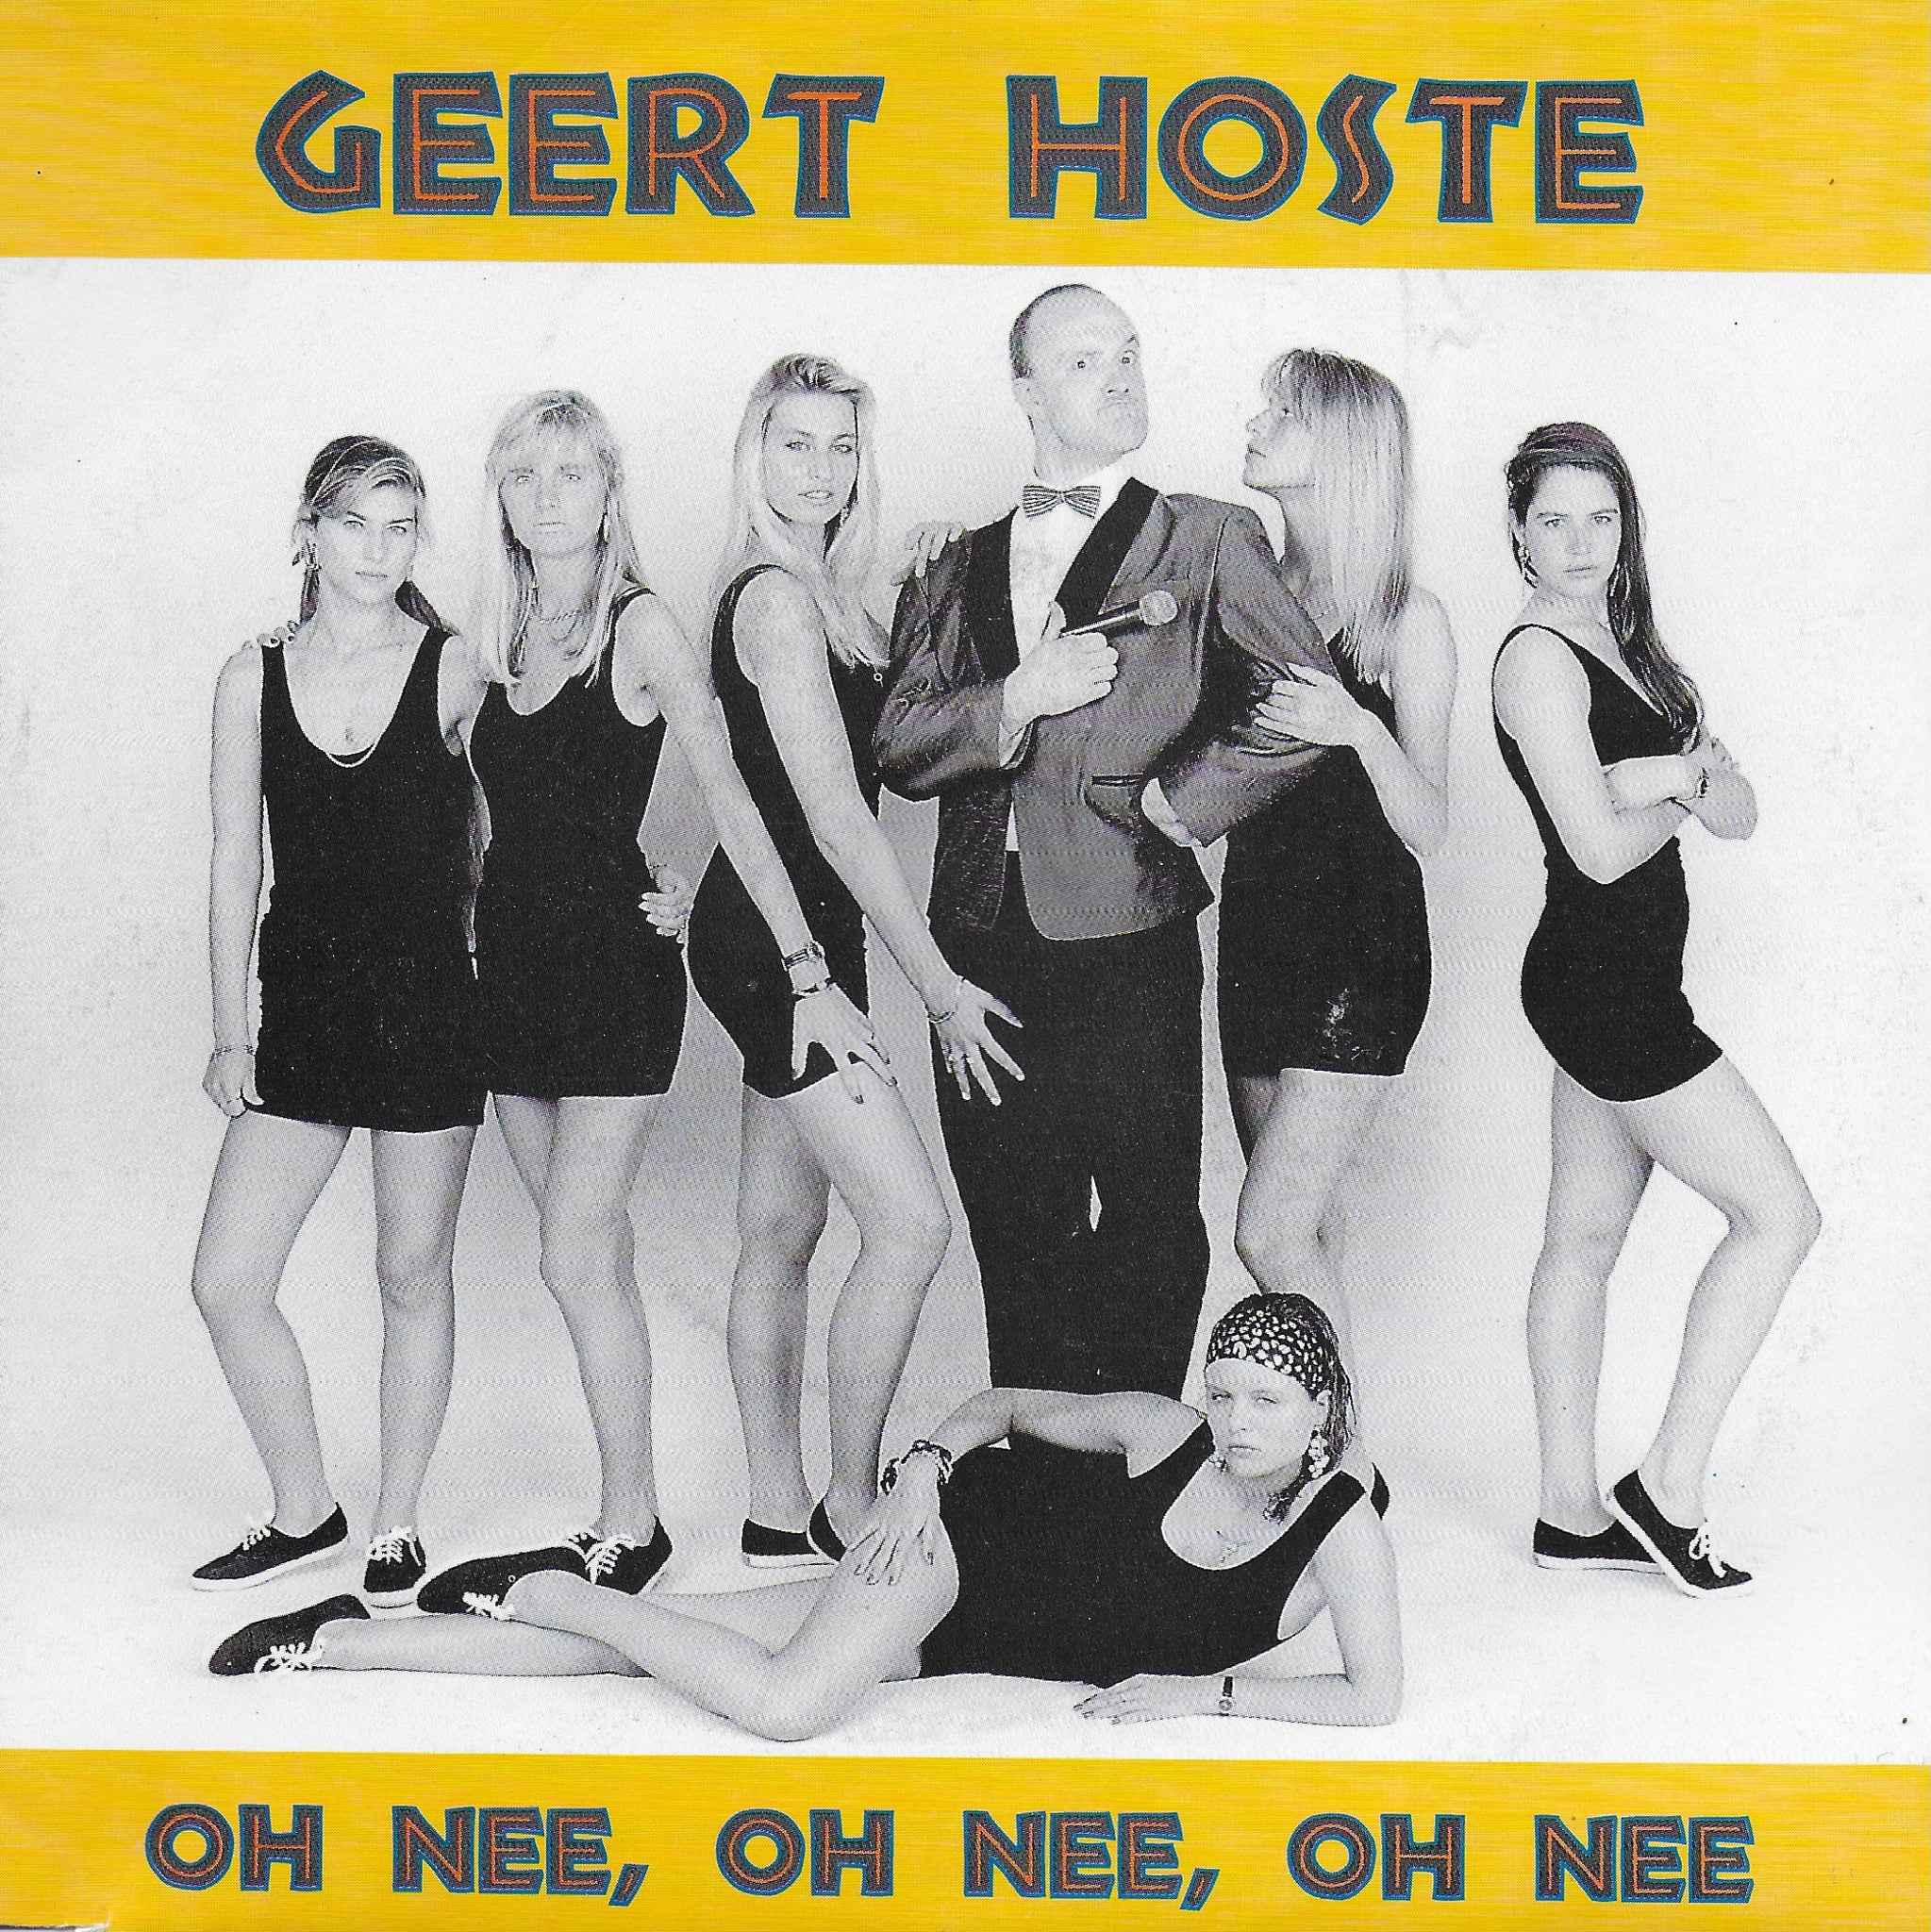 Geert Hoste - Oh nee, oh nee, oh nee